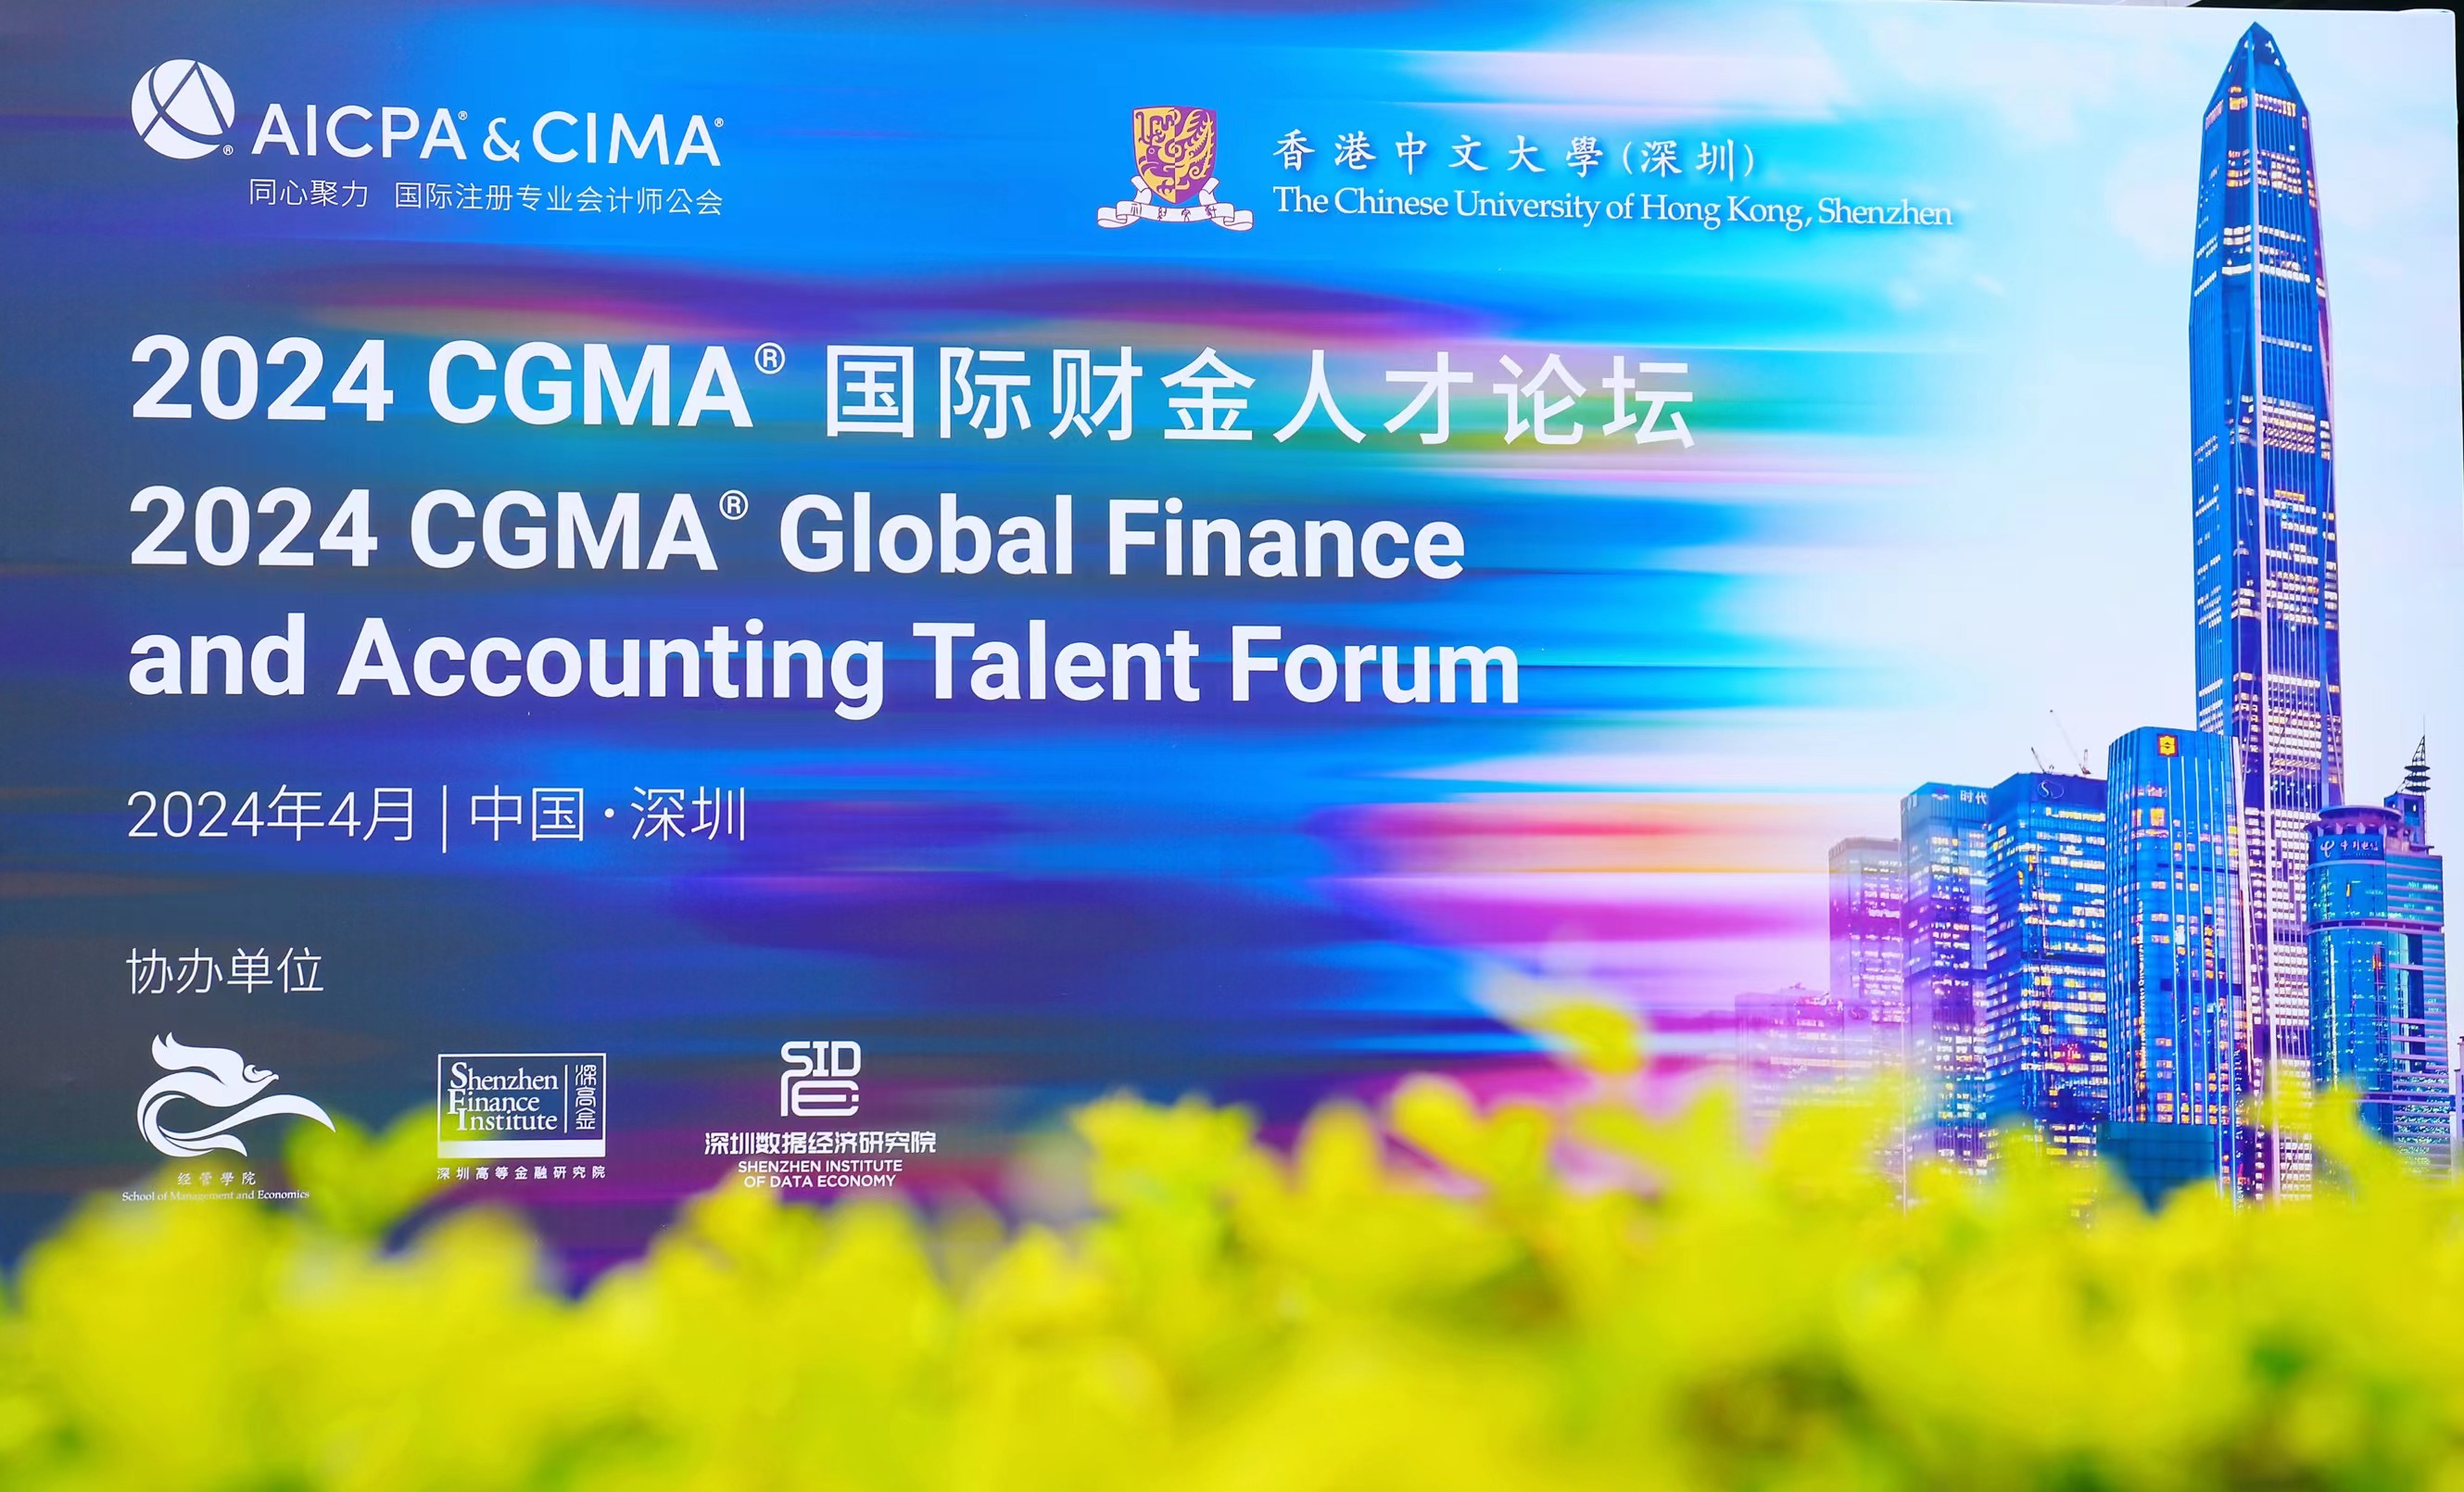 国际注册专业会计师公会（AICPA & CIMA）携手香港中文大学（深圳）举行 “ 2024 CGMA国际财金人才论坛 ”